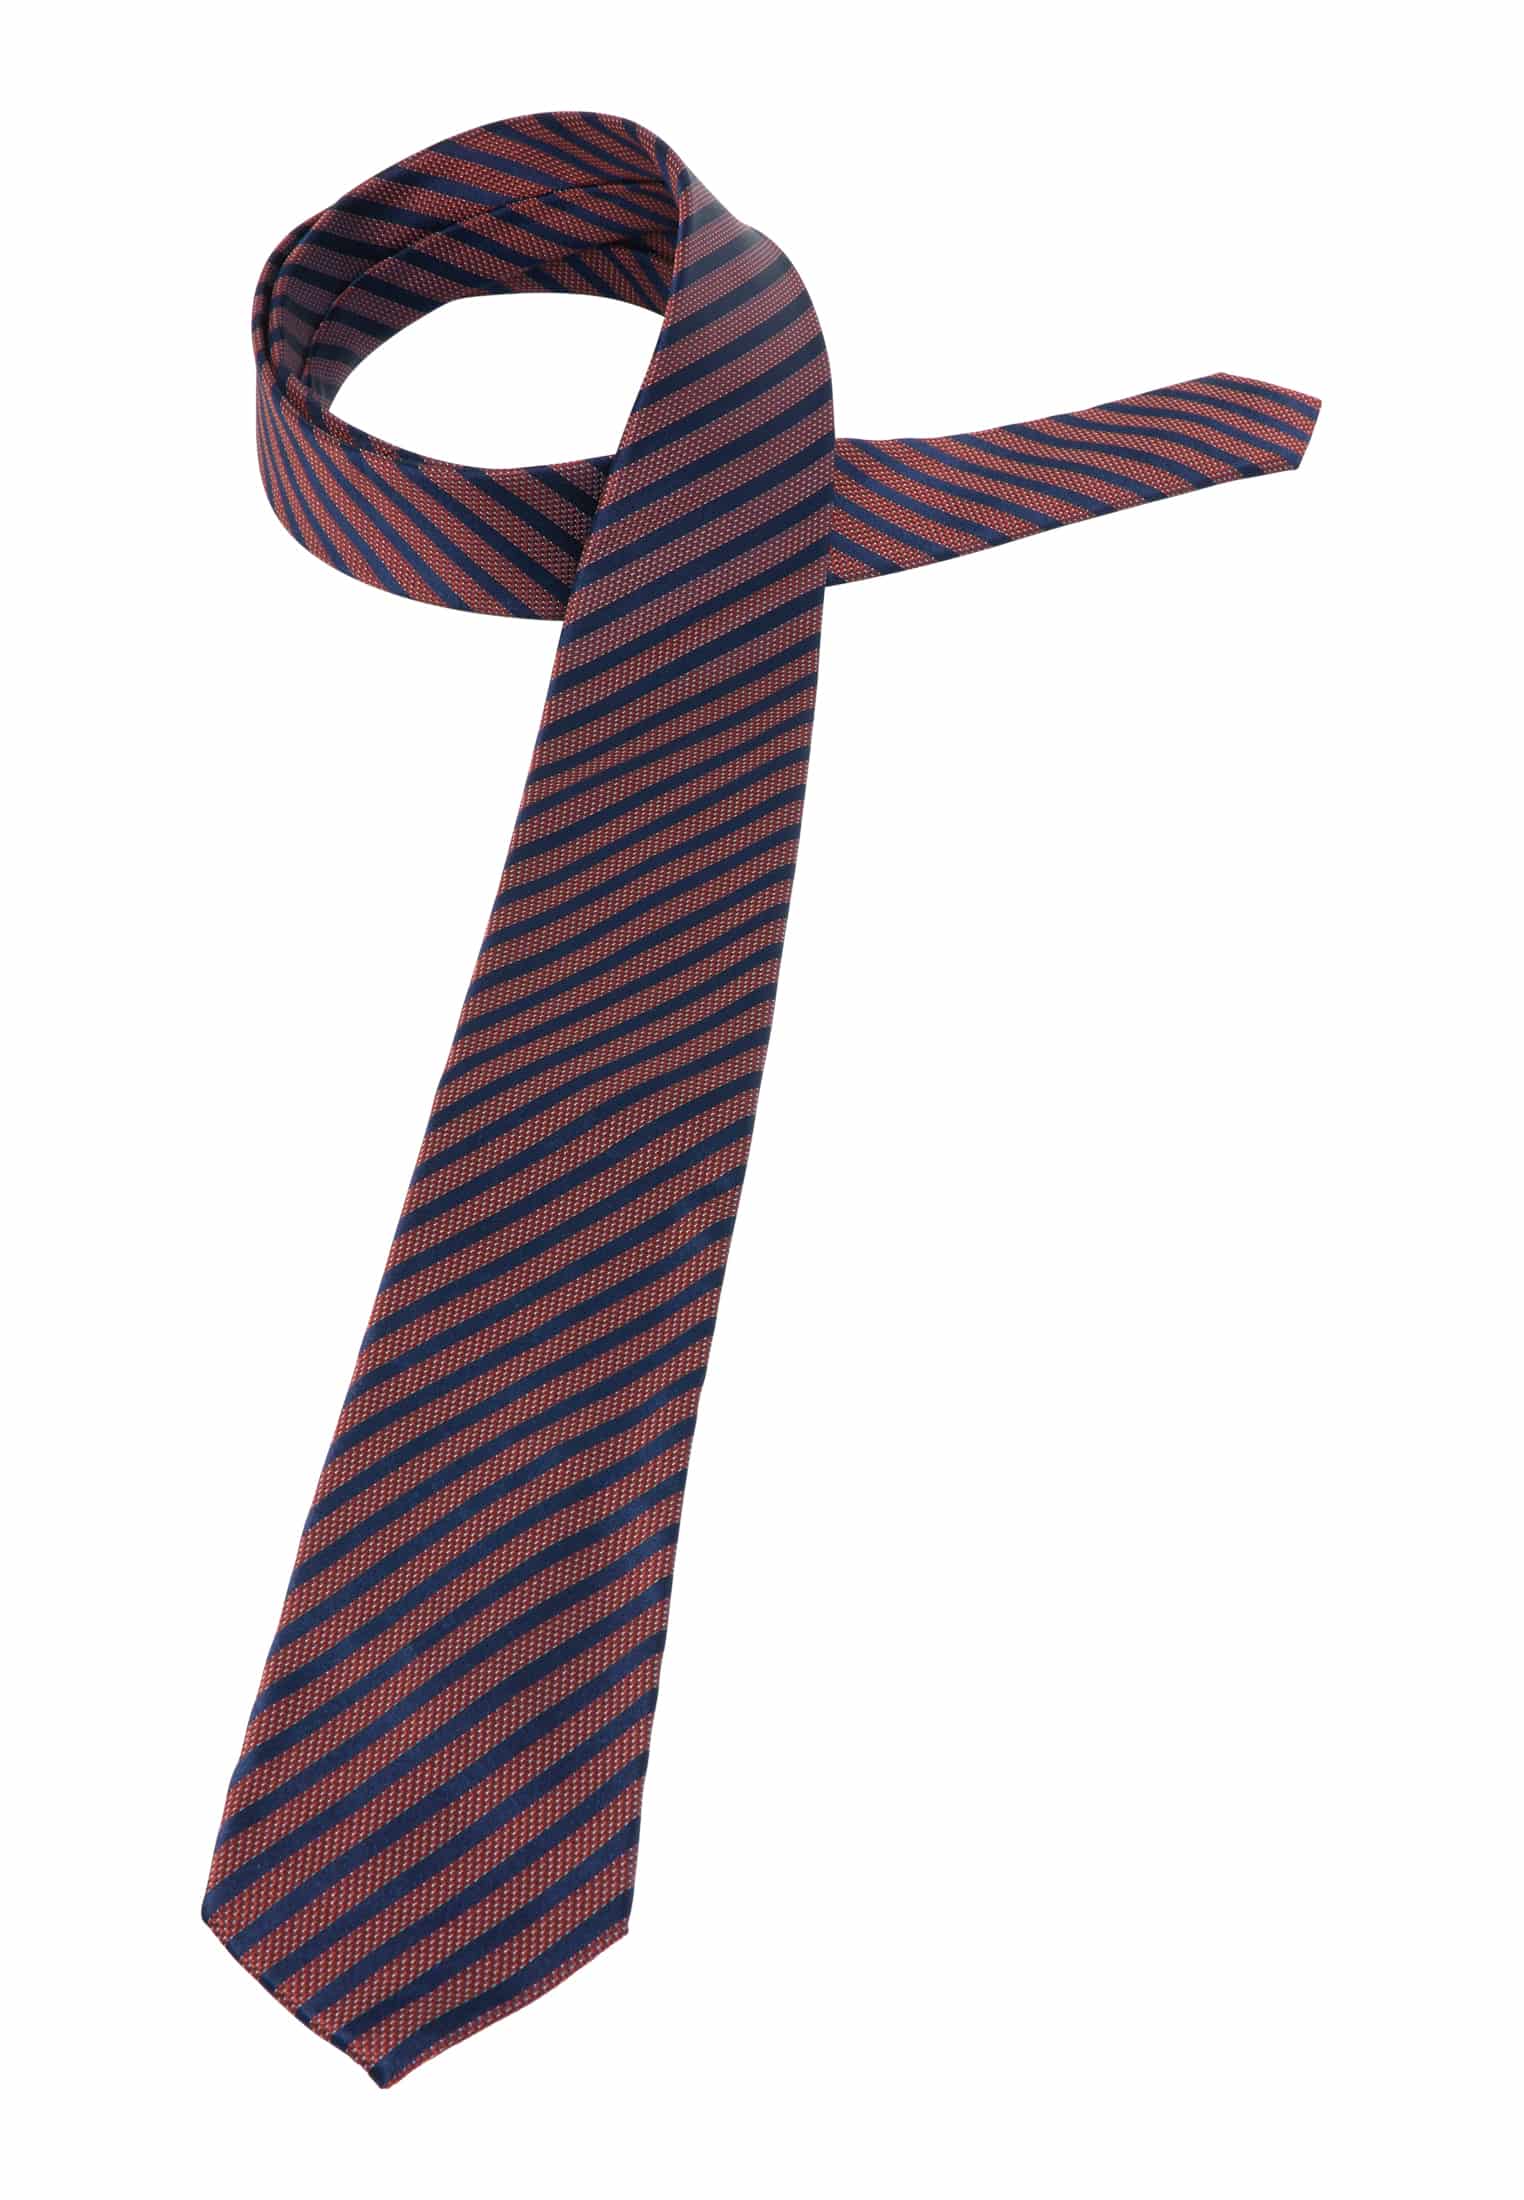 Krawatte in rot gestreift | 142 rot 1AC01905-05-01-142 | 